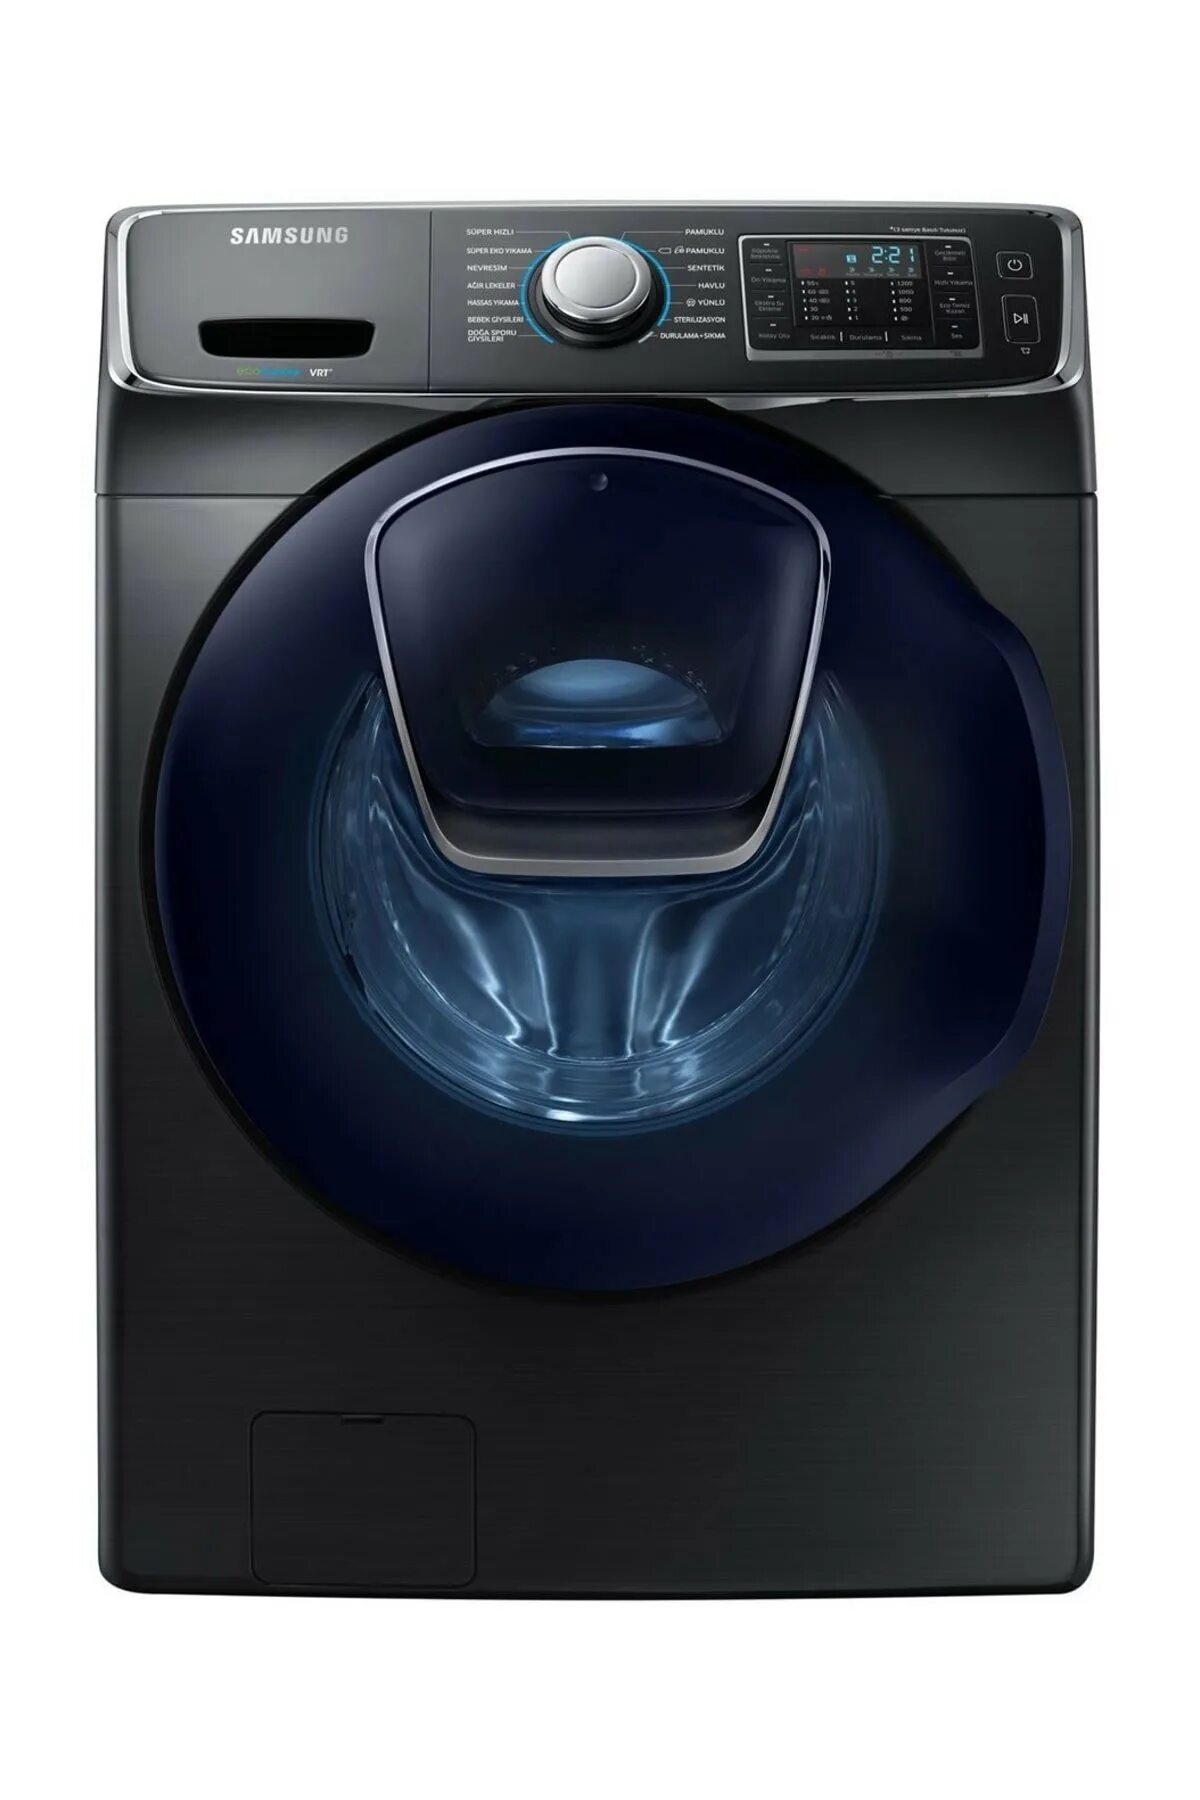 Недорогие стиральные машины. Samsung ADDWASH. Стиральная Samsung ADDWASH. Черная стиральная машинка самсунг. Samsung ADDWASH 8 kg washing Machine model ww80k5210ux.